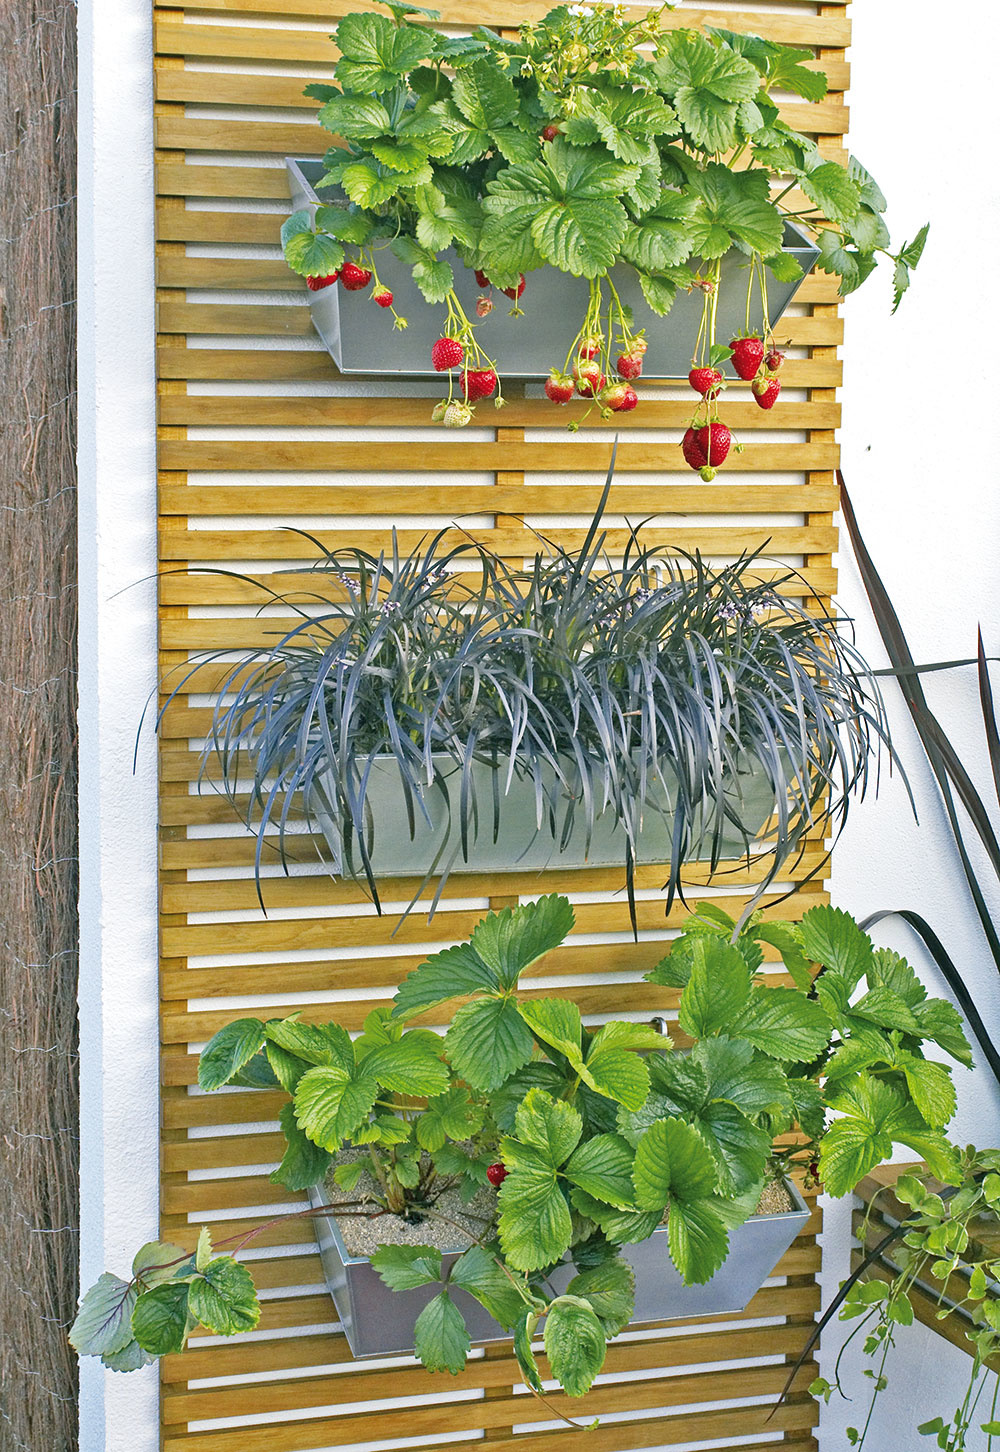 Kto by nemal rád jahody? Pestovať ich možno aj na balkóne. Stačí zvoliť správny kultivar, vybrať vhodnú nádobu a použiť substrát určený na ich pestovanie. A nezabudnite ich pravidelne zavlažovať. Pri pestovaní zelene na balkóne vám pomôžu využiť priestor aj do výšky regály alebo kovové siete, ktoré pripevníte na stenu.